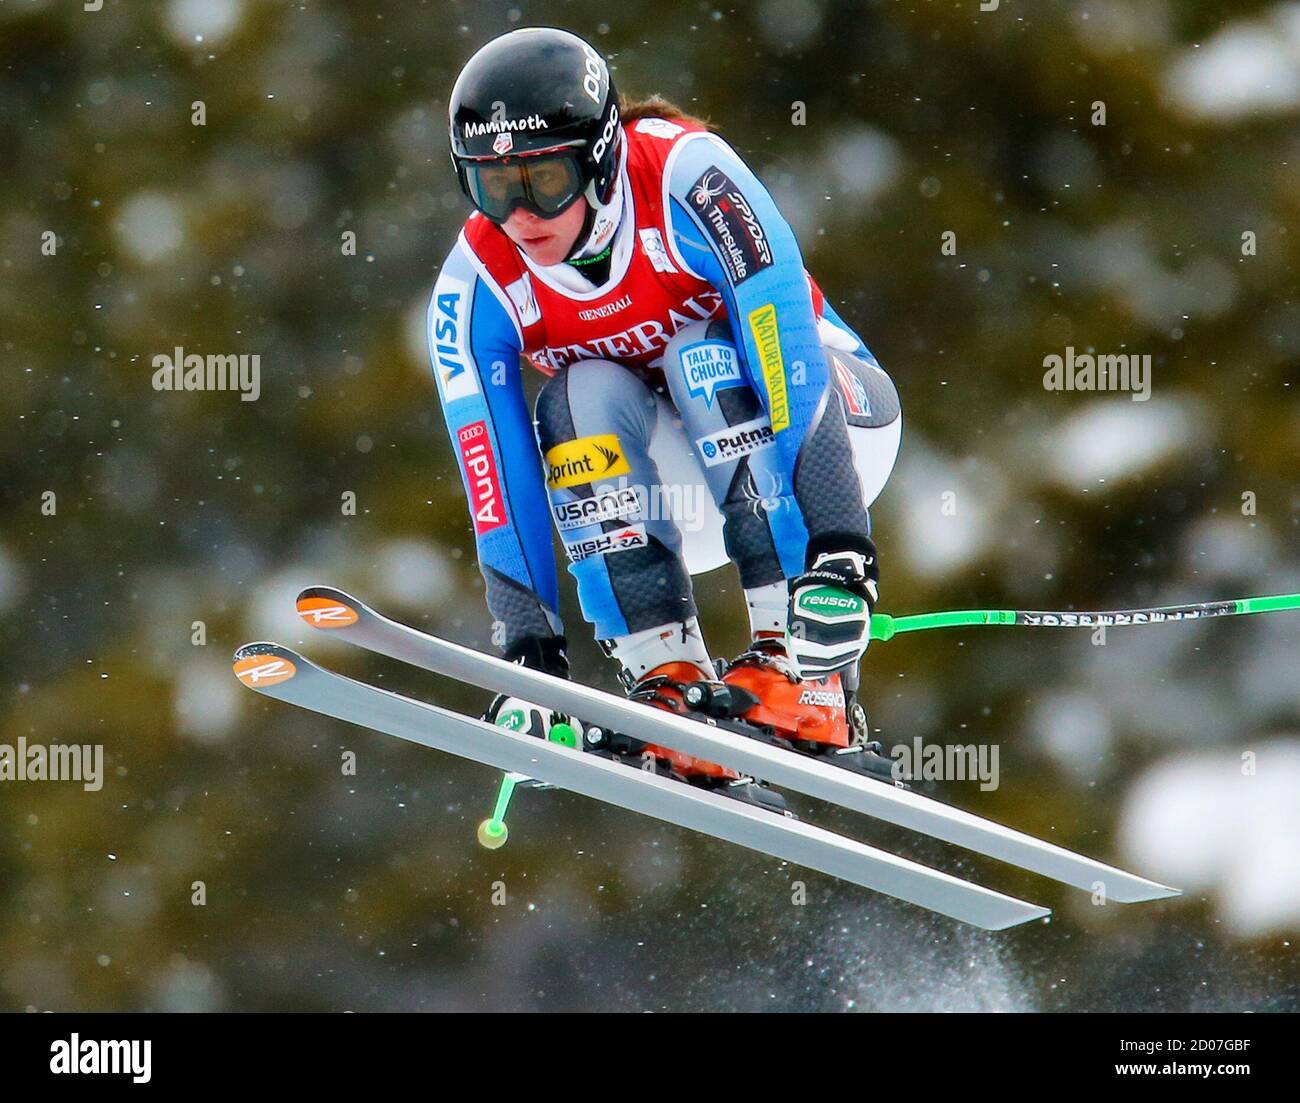 Stacey Cook, des États-Unis, prend l'air lors de l'entraînement de ski alpin pour la coupe du monde des femmes à Lake Louise, en Alberta, le 29 novembre 2012. REUTERS/Mike Blake (CANADA - Tags: SKI DE SPORT) Banque D'Images